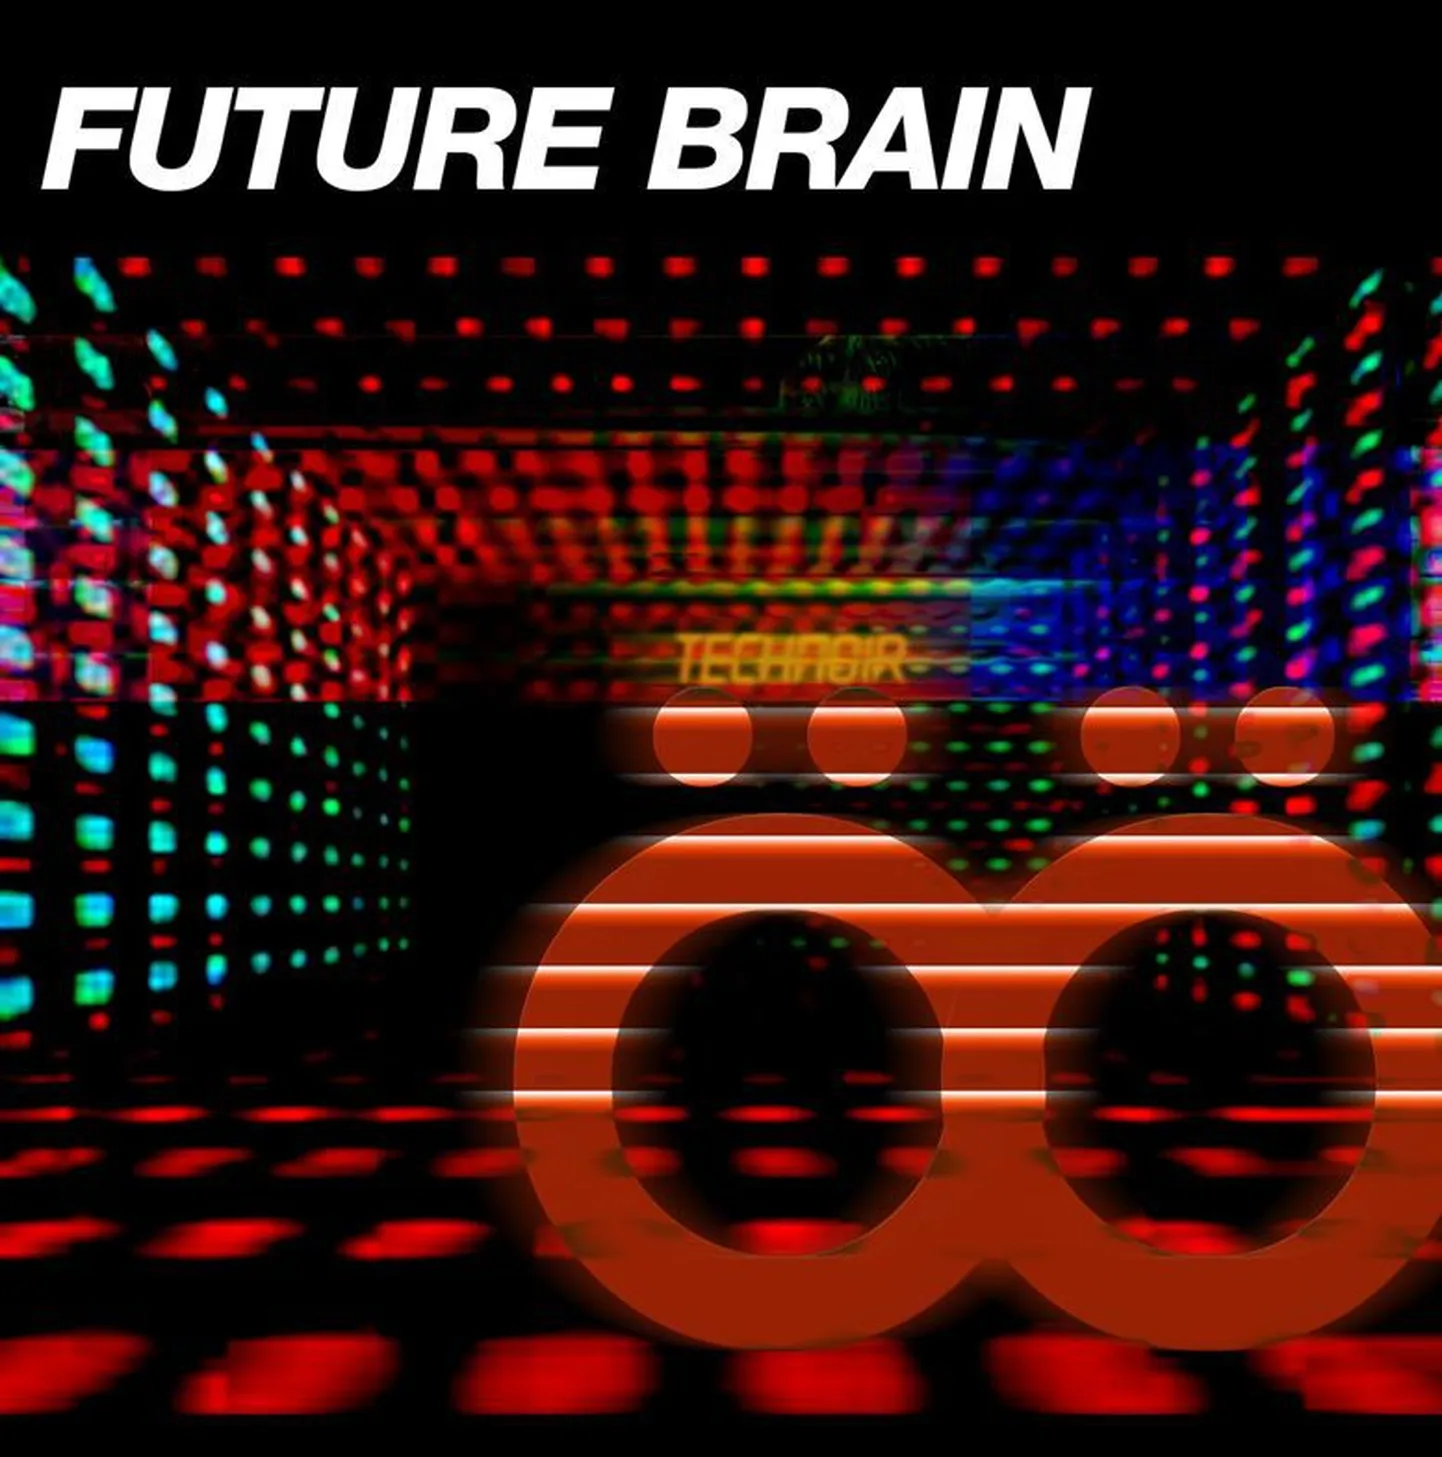 Futudisko duo Future Brain avaldas esimese singli